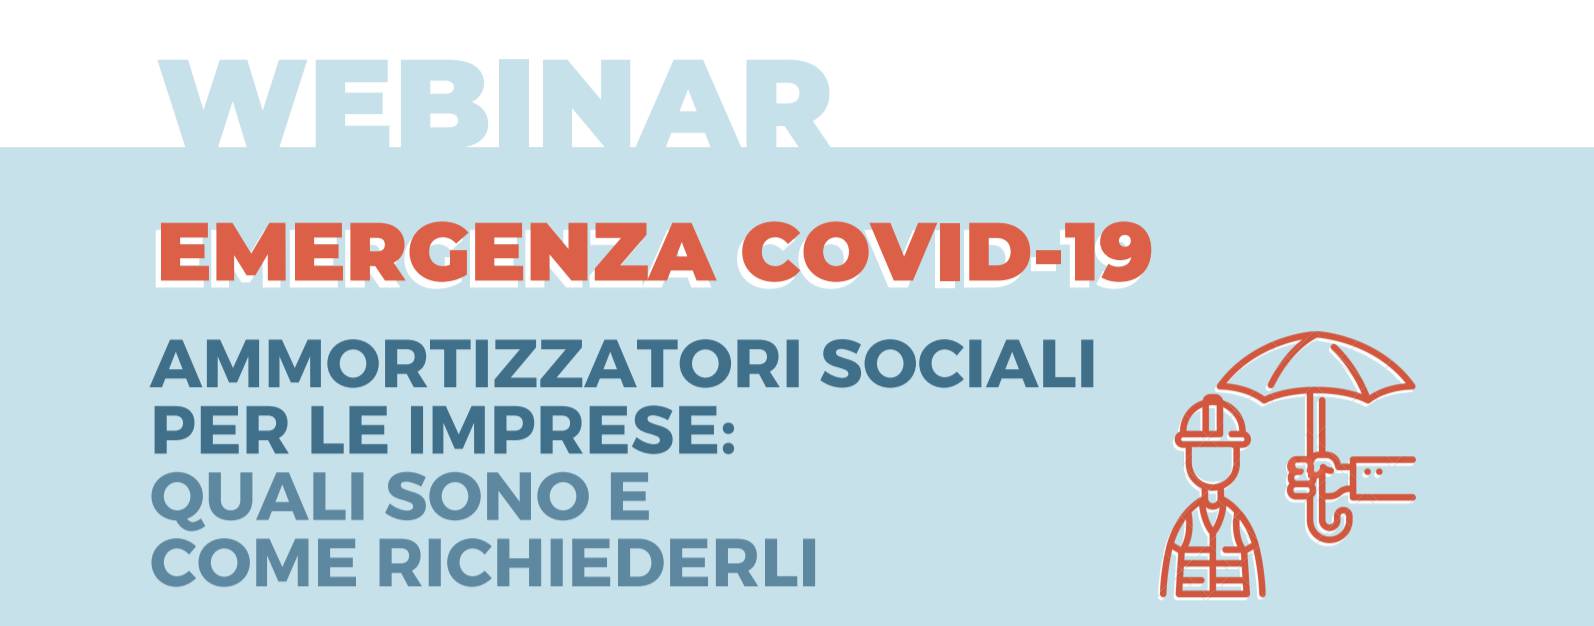 Ammortizzatori sociali per le imprese: domani il webinar di Confindustria Cuneo